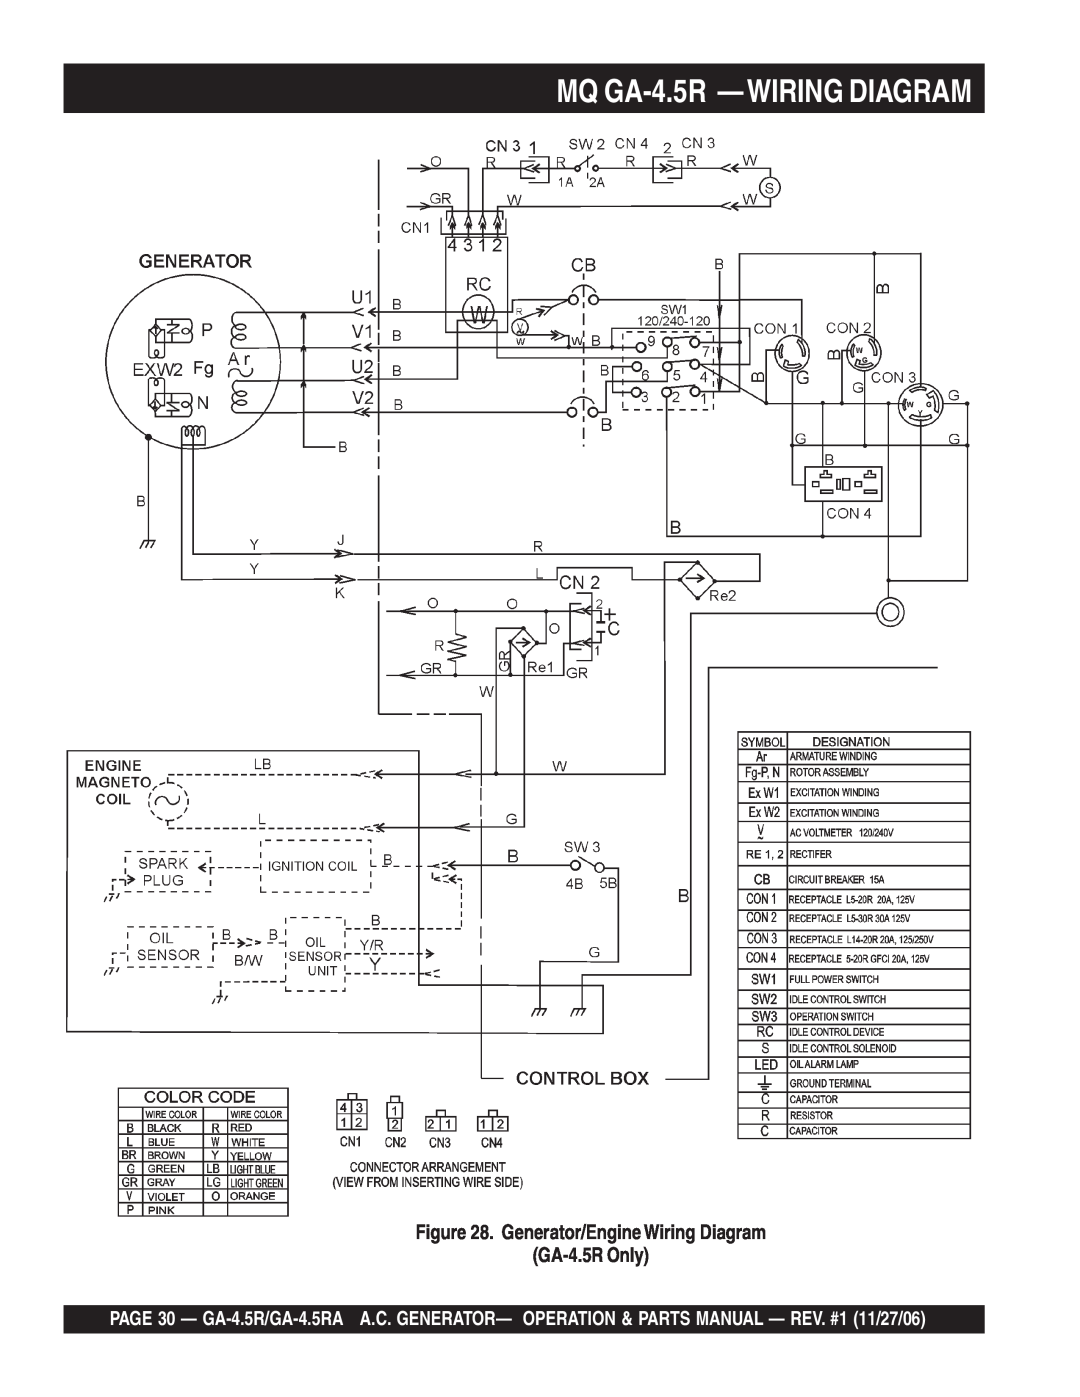 Multiquip GA4.5RA manual MQ GA-4.5R -WIRING DIAGRAM, Generator/Engine Wiring Diagram GA-4.5R Only 